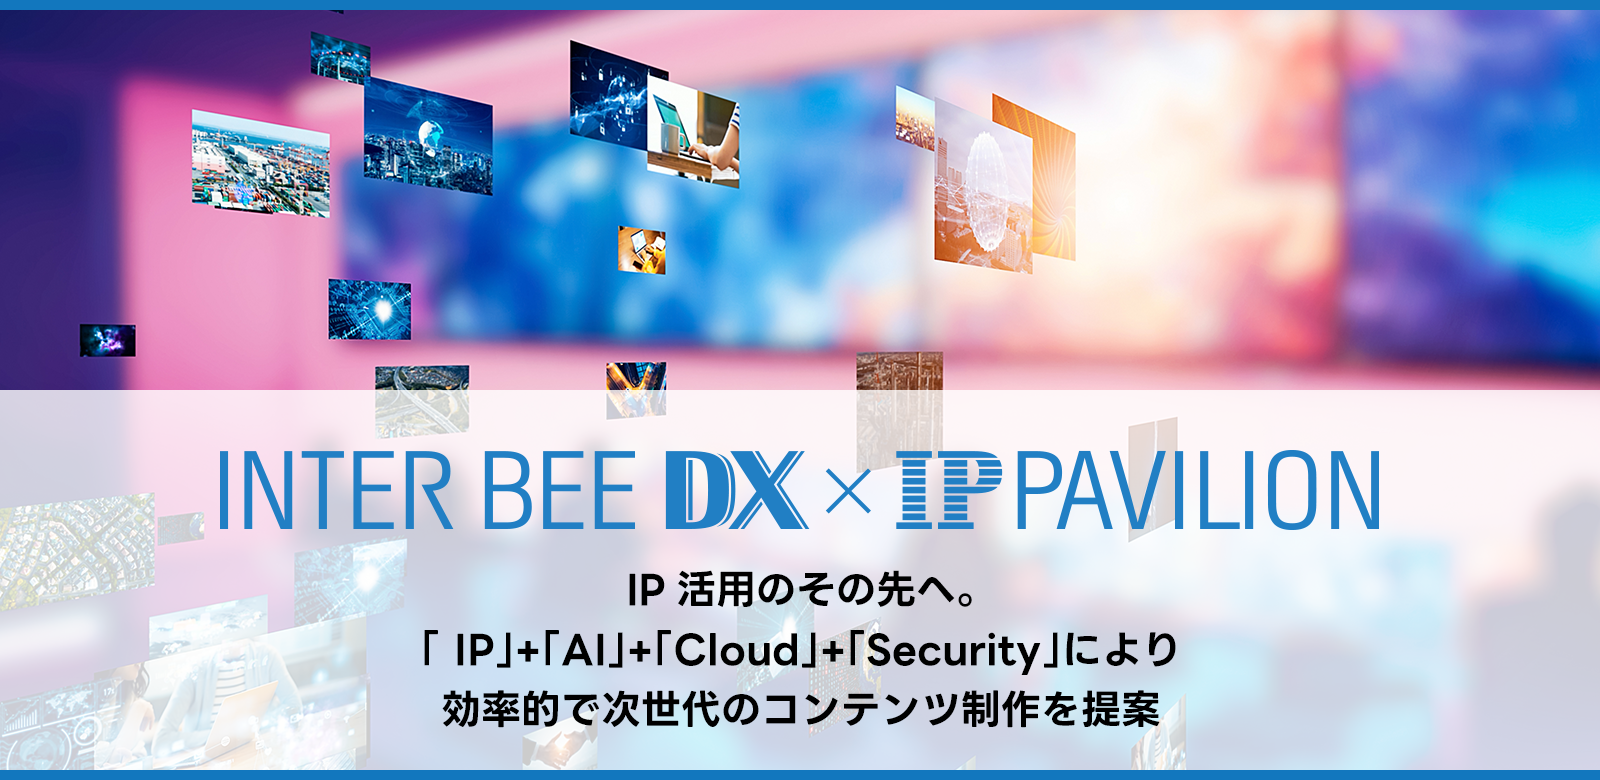 INTER BEE DX x IP PAVILION メインビジュアル